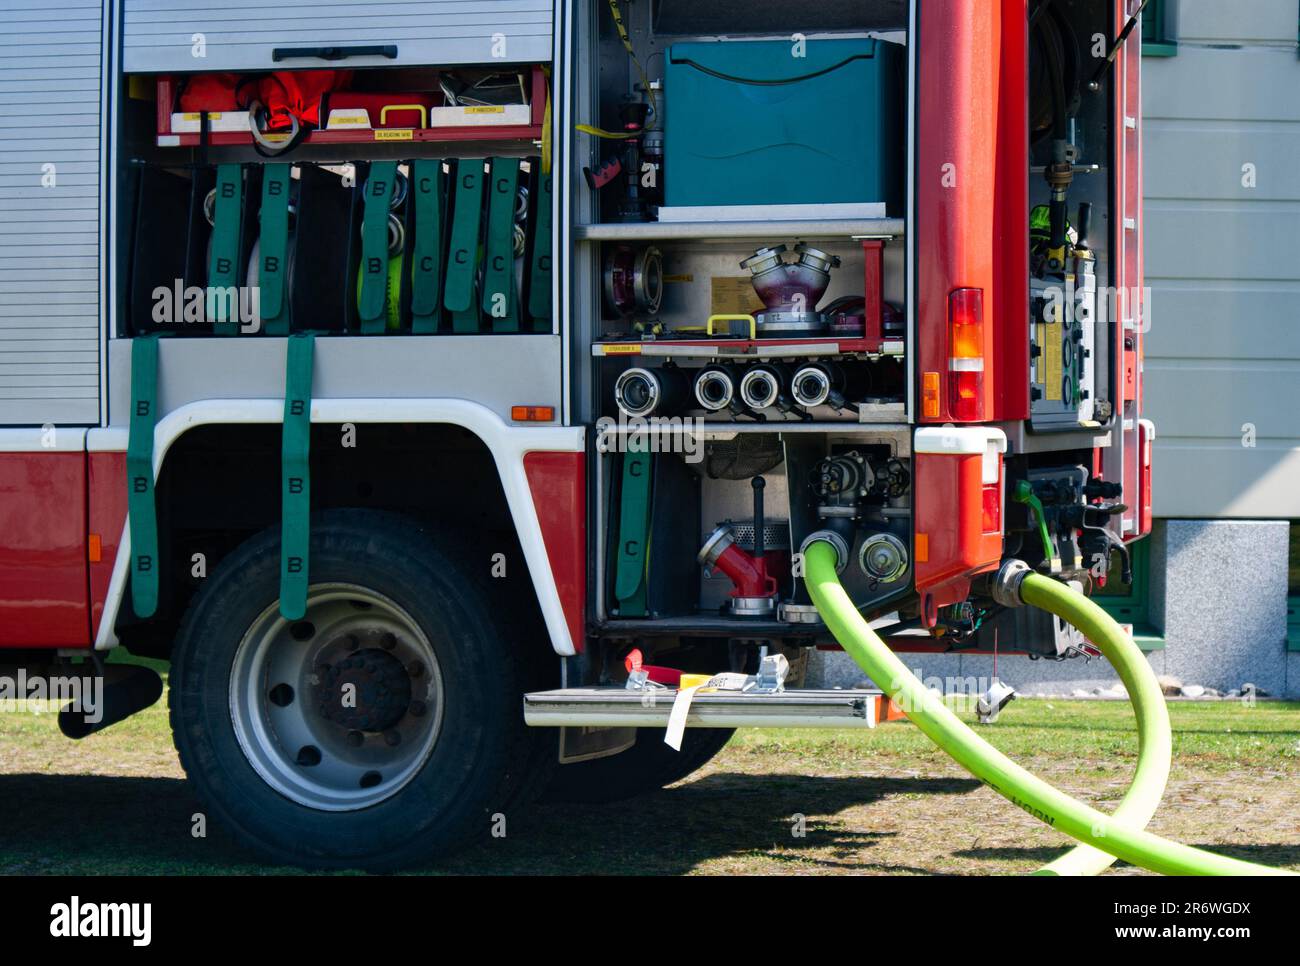 Geräteraum eines Feuerwehrautos mit Schläuchen die Wasser pumpen Stock Photo